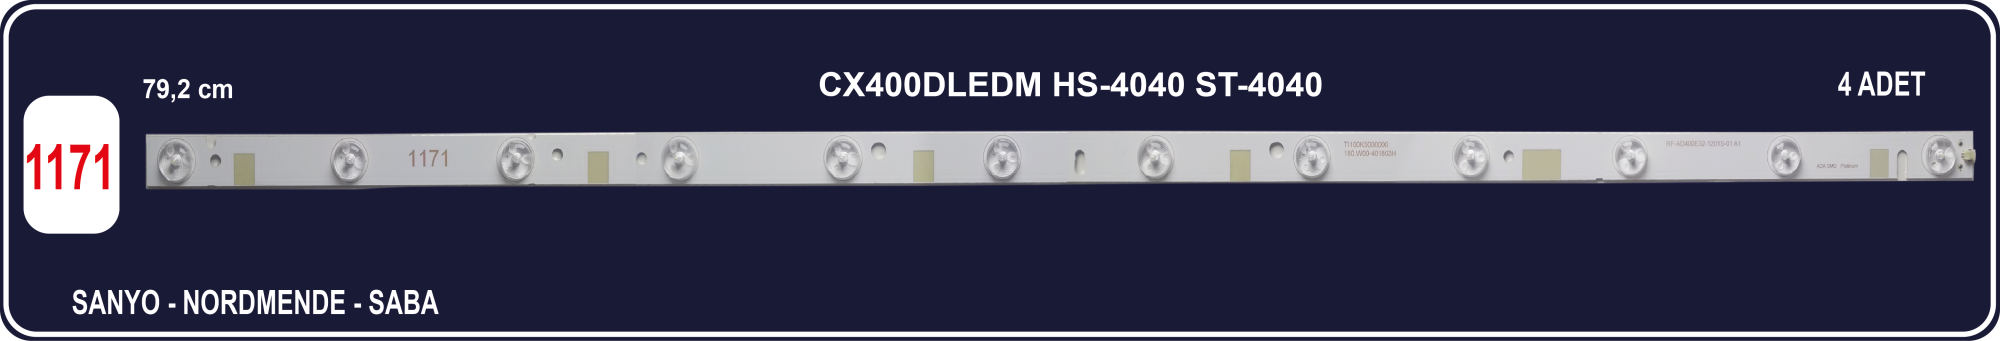 SANYO CX400DLEDM - HS-4040 - ST-4040